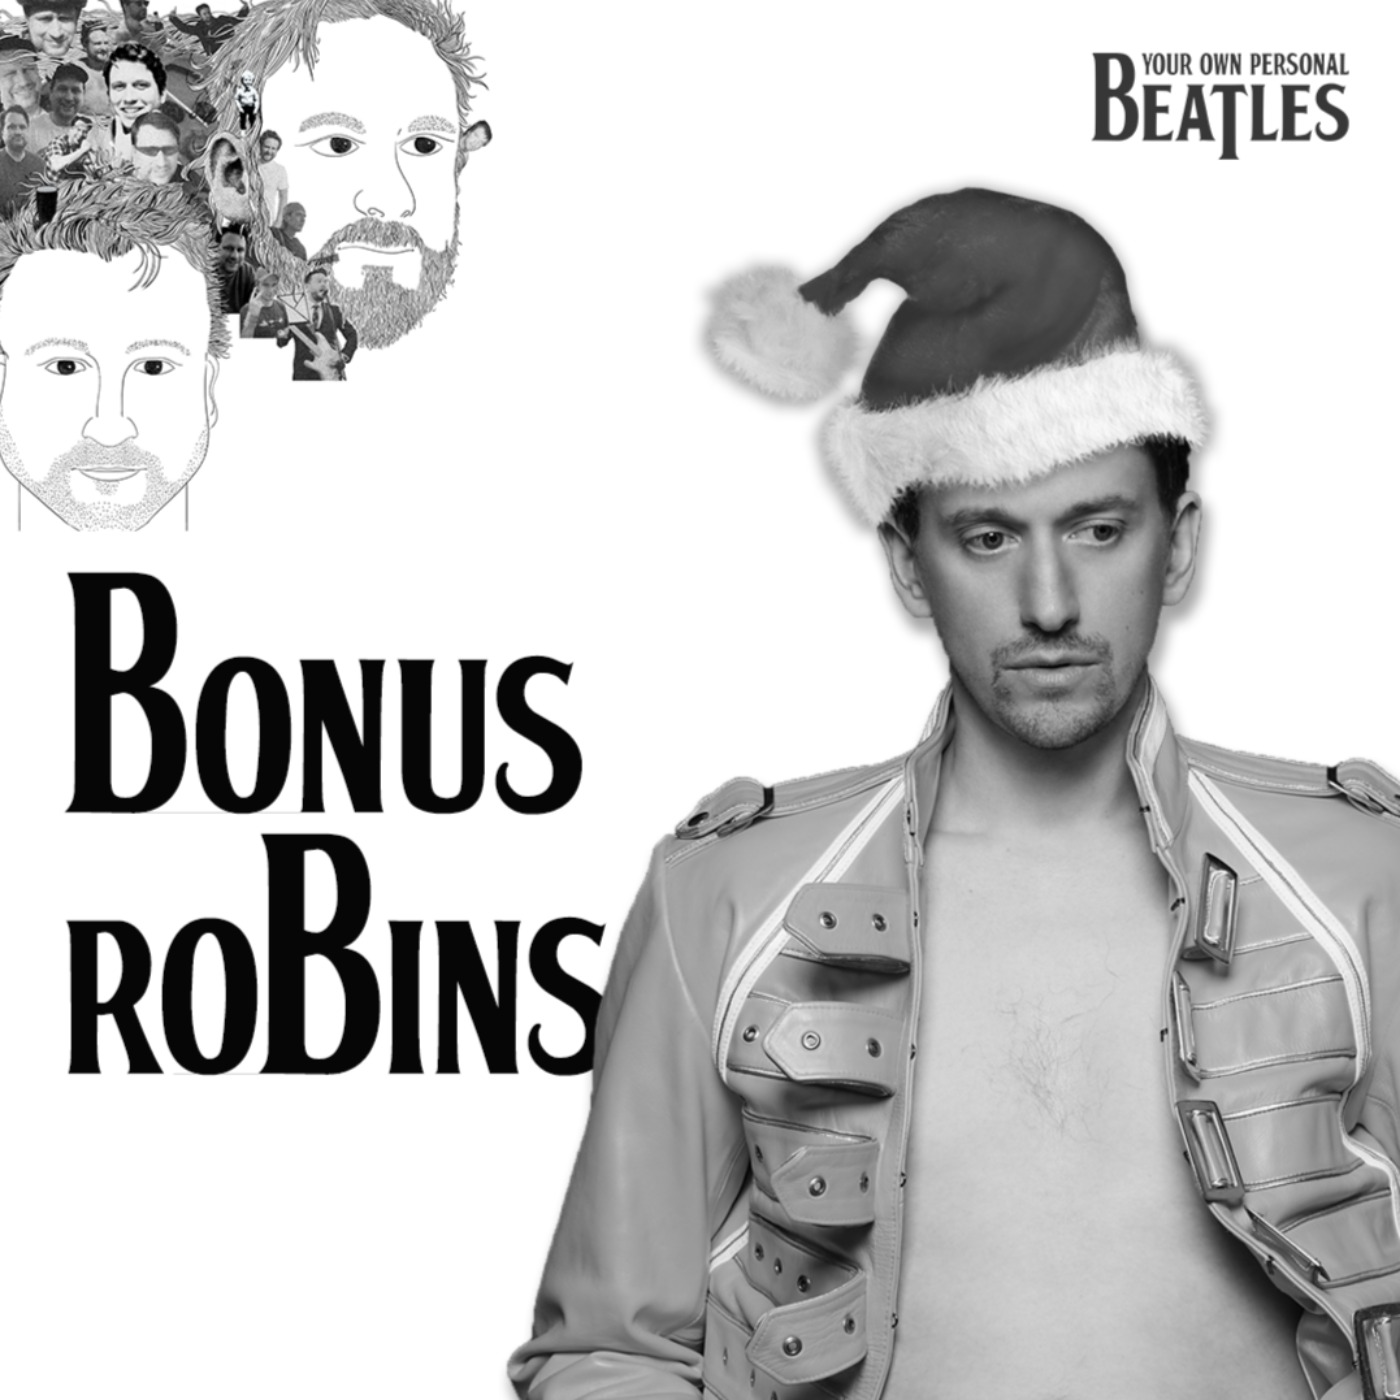 Bonus John Robins